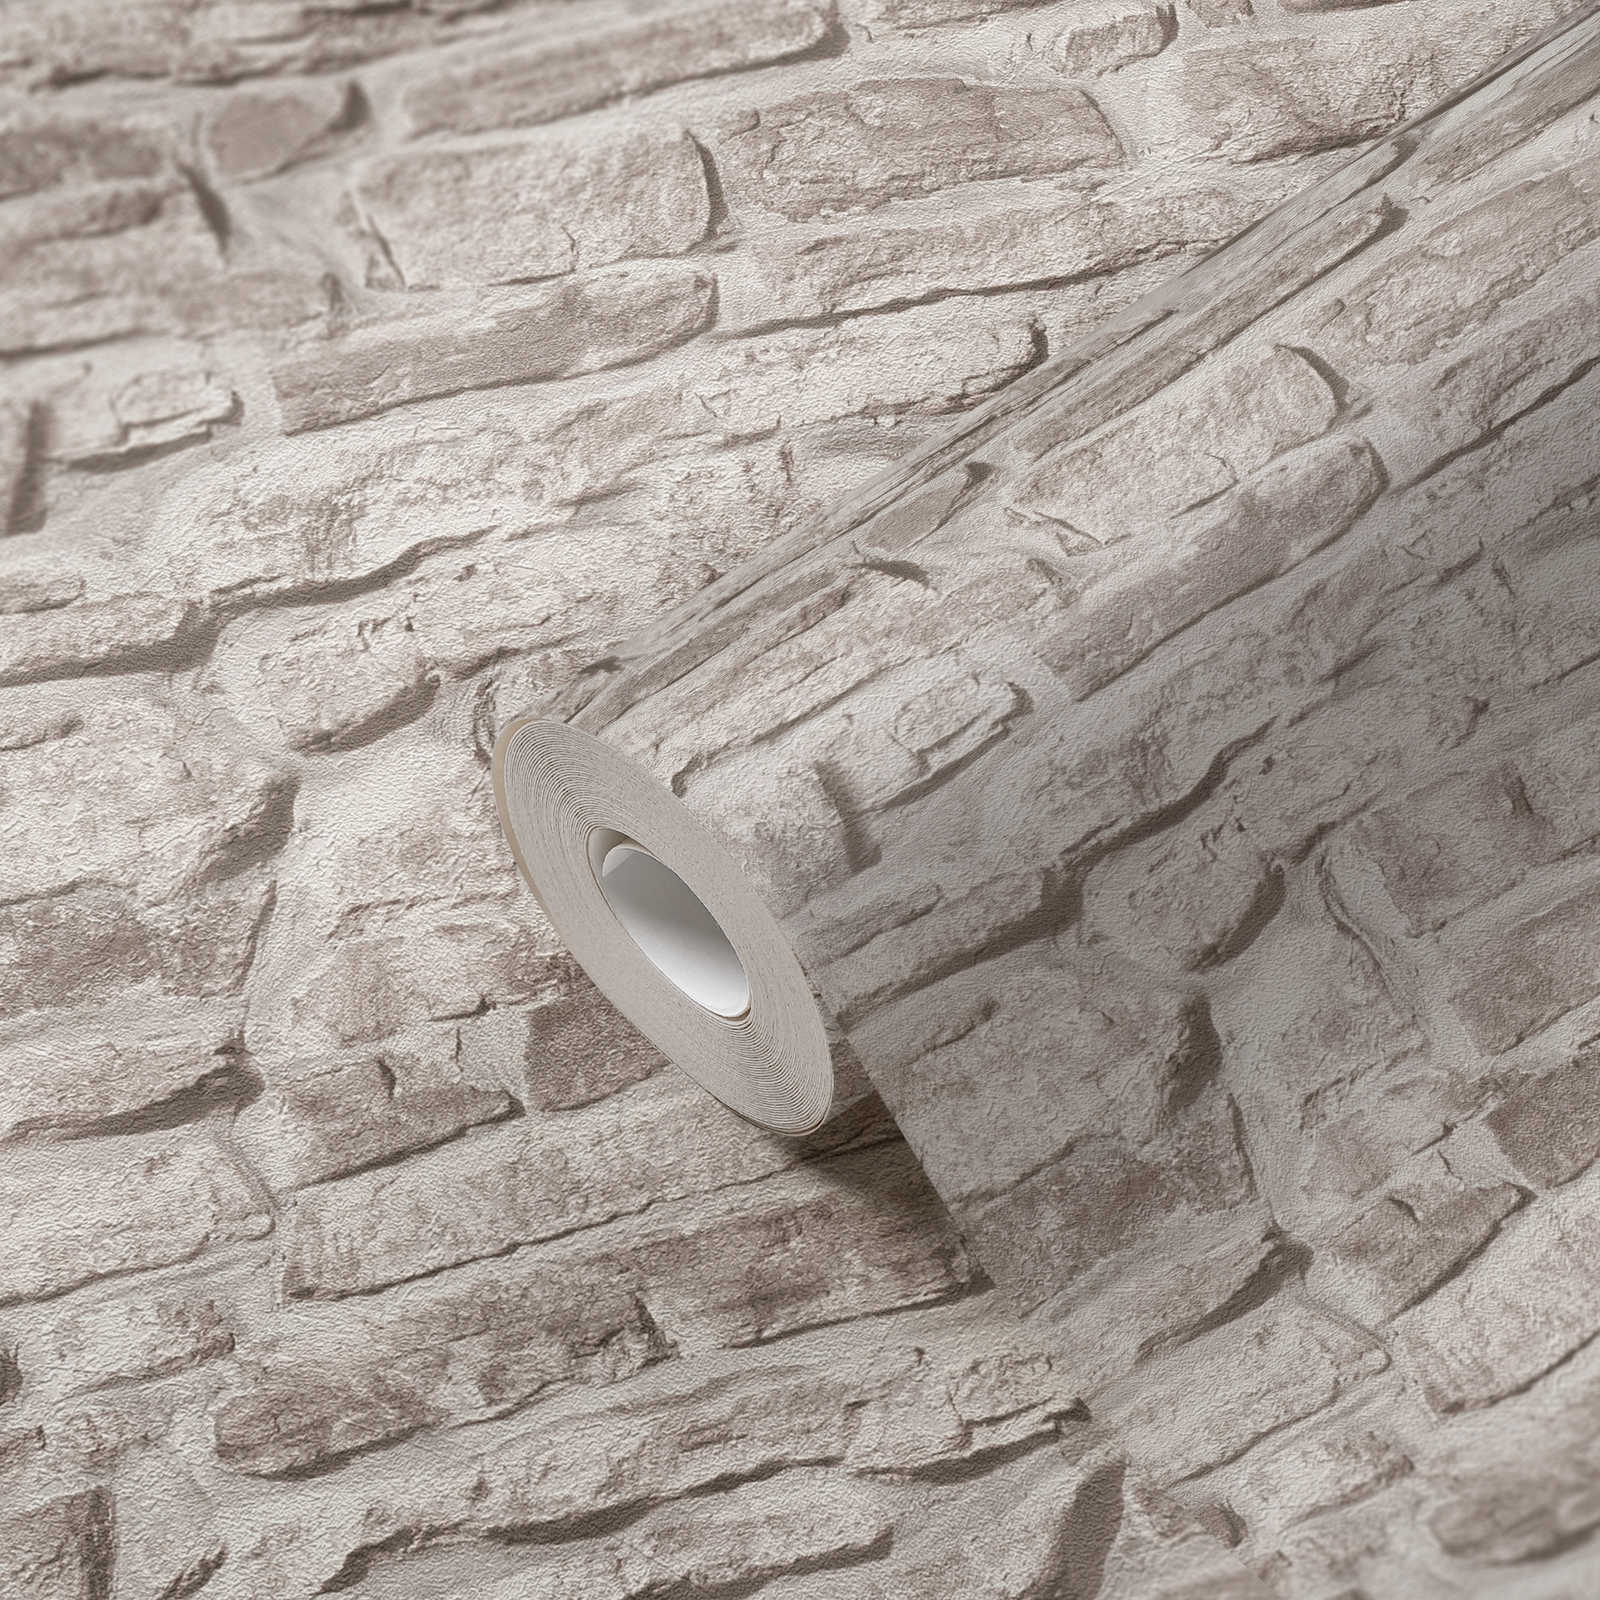             Papel pintado tejido-no tejido con aspecto de piedra rústica - gris, gris, blanco
        